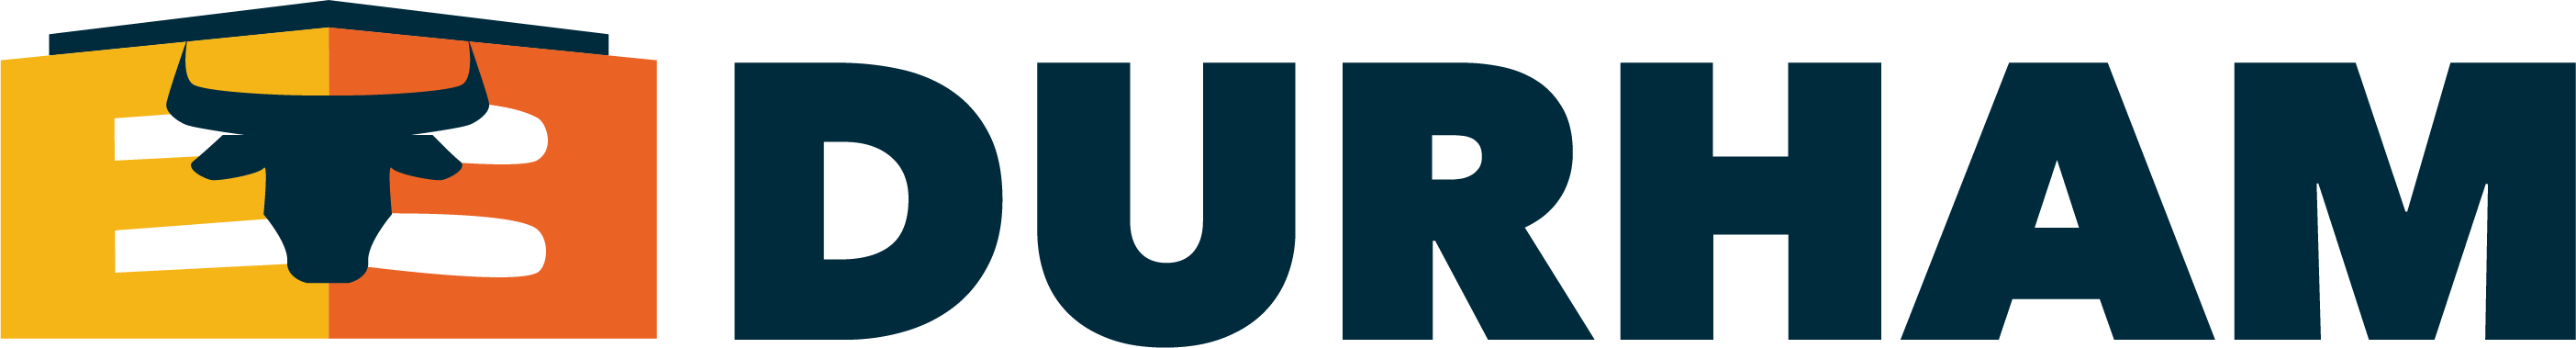 E3 Durham logo